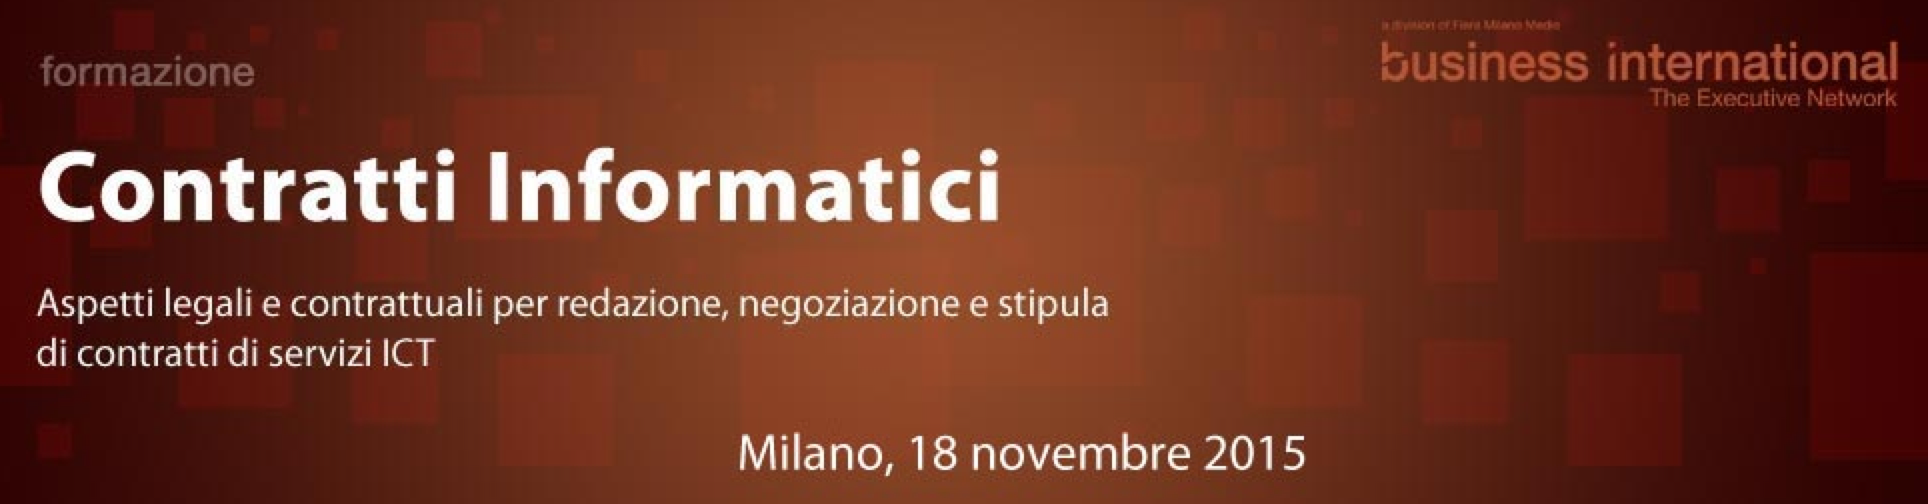 Come gestire i contratti di servizi ICT? Se ne parla a Milano il 18 novembre